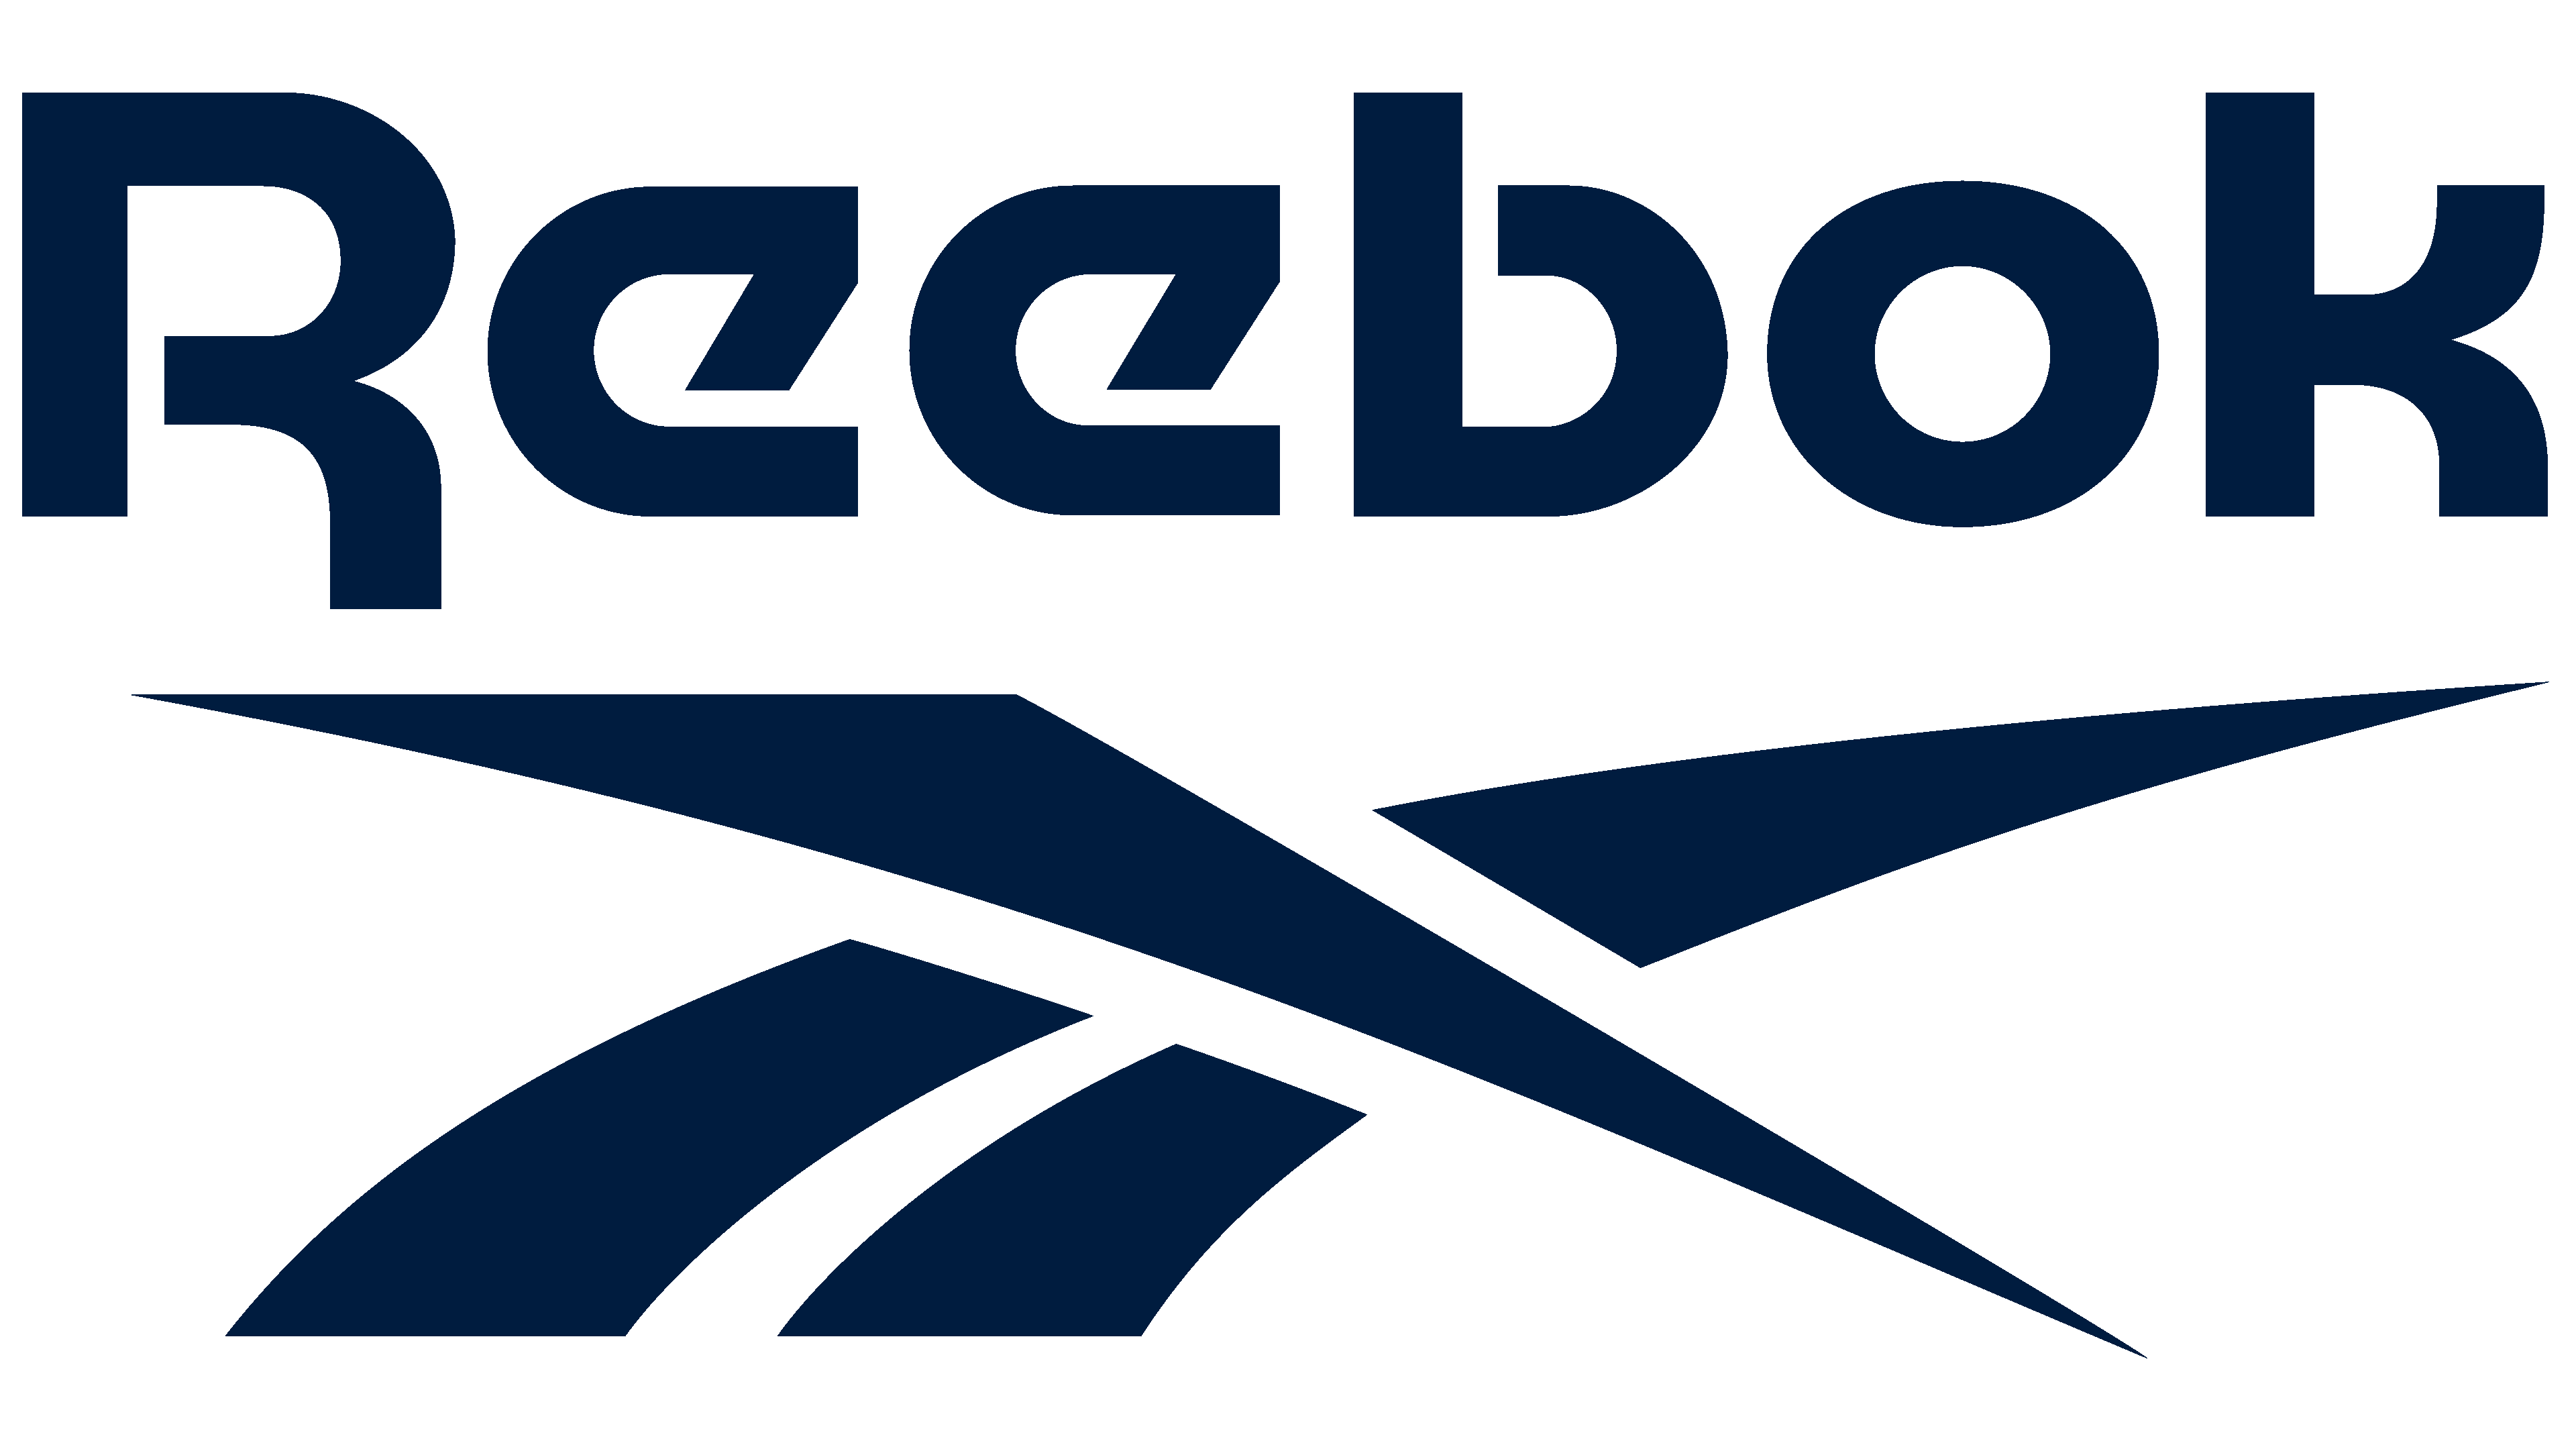 nuevo logo reebok